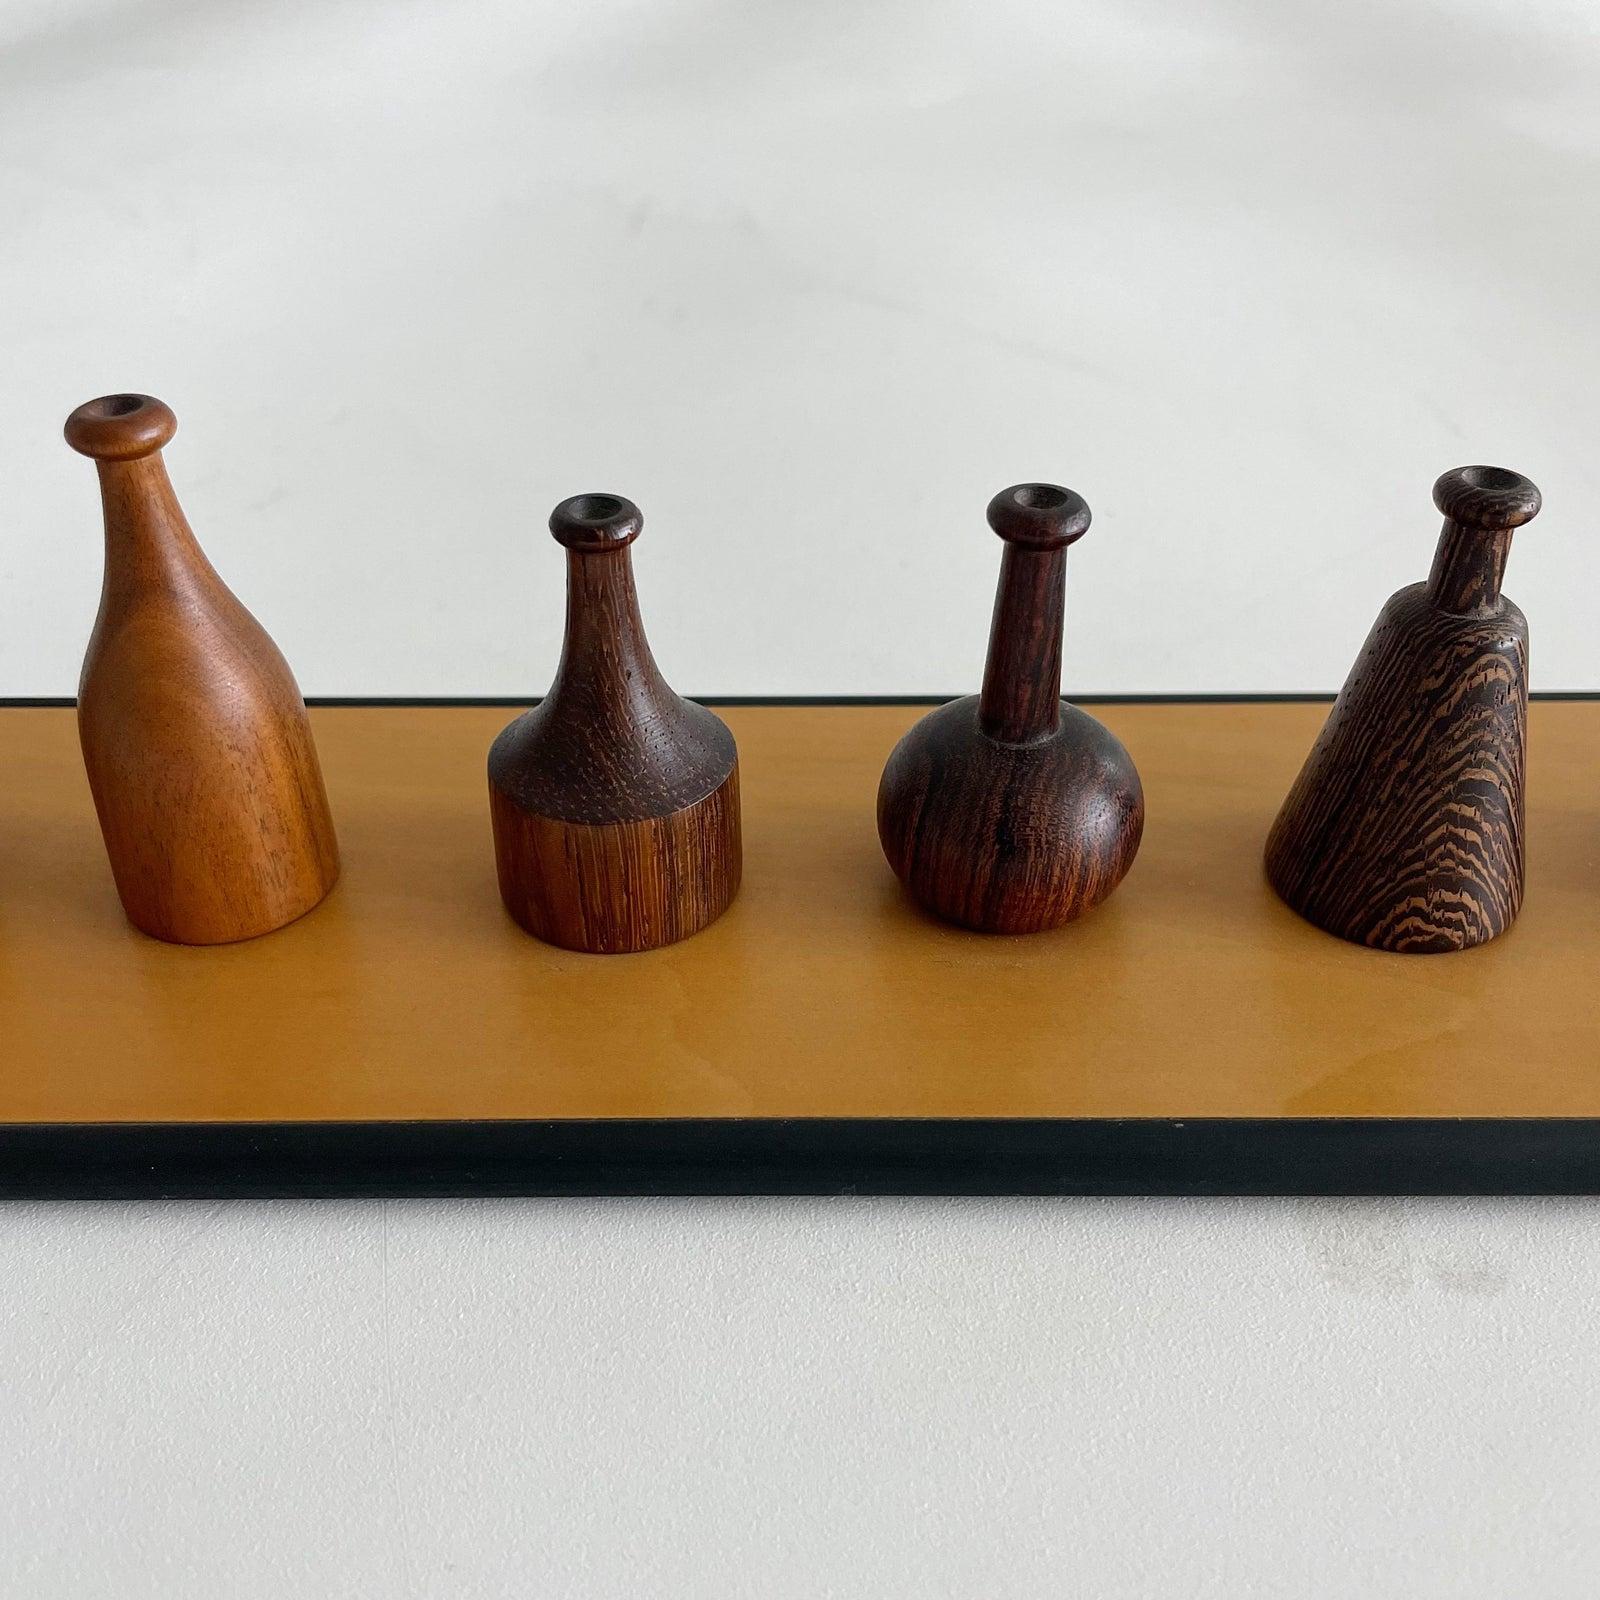 Italian Giorgio Pizzitutti Exotic Wood Miniature Vases Sculpture Italy 1980's